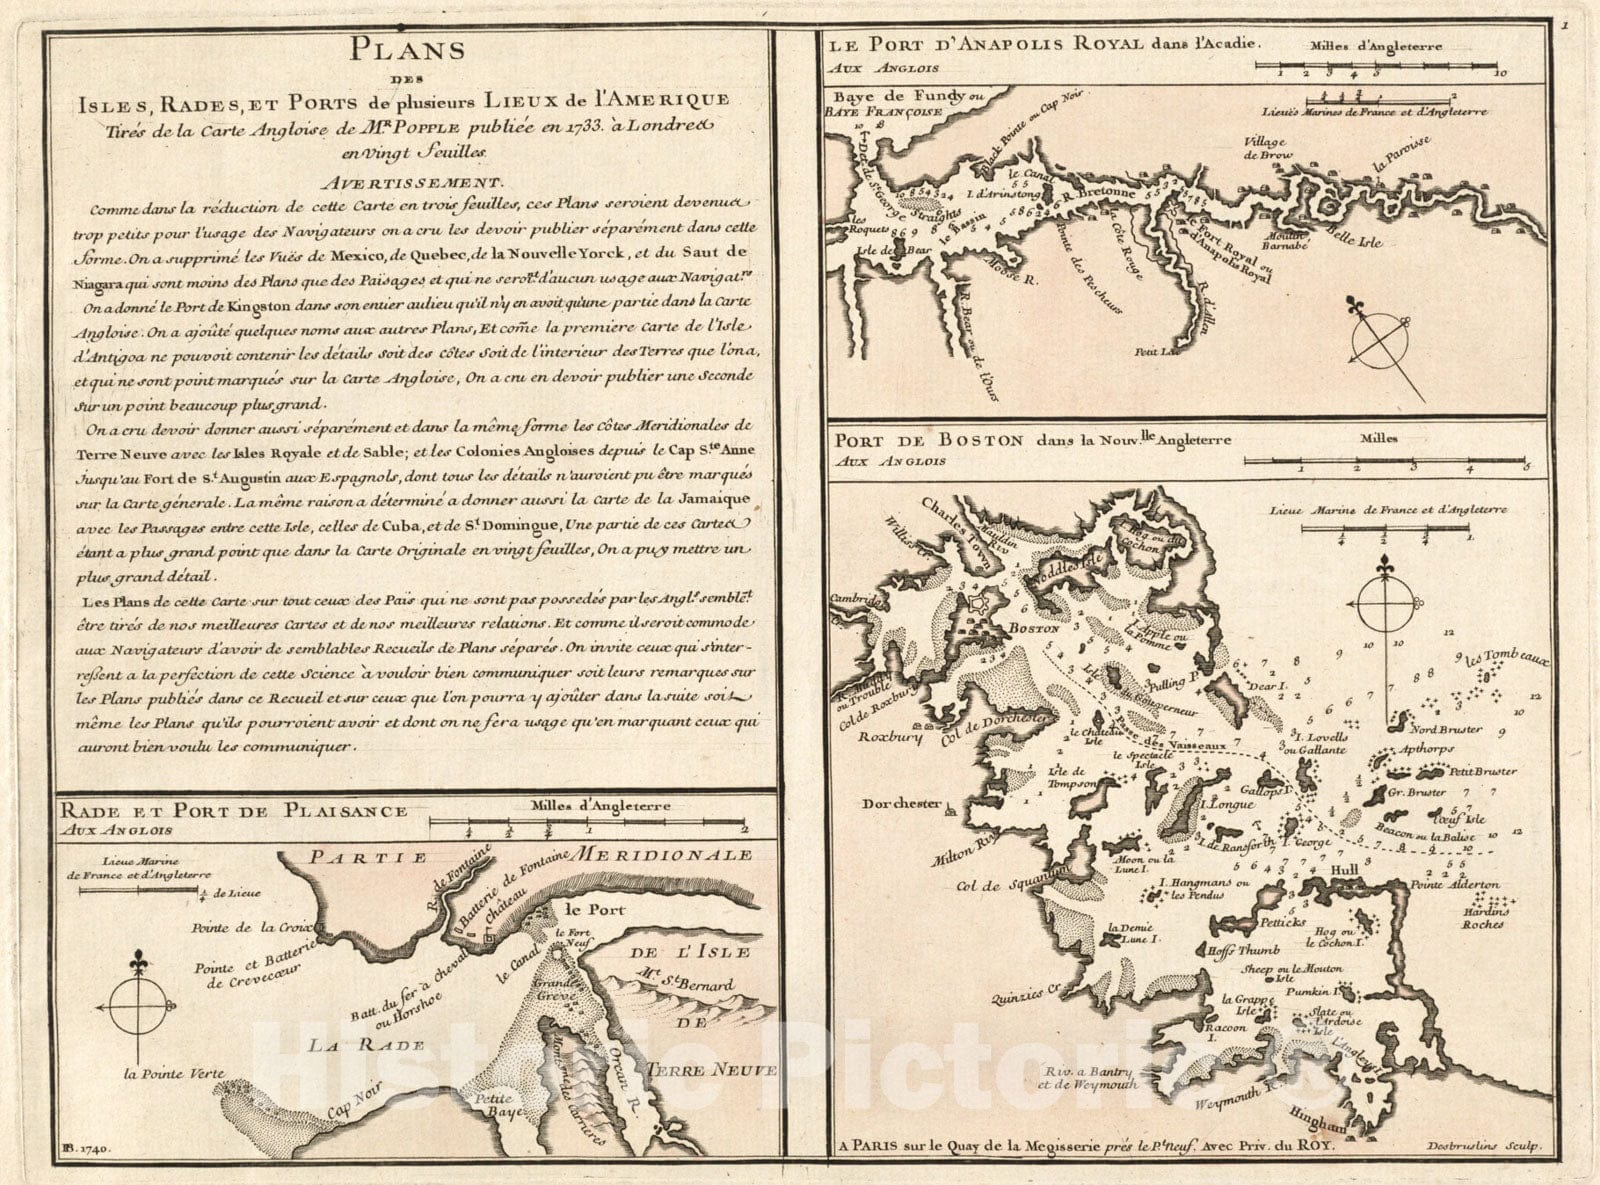 Historical Map, 1740 Rade et Port de Plaisance - Le Port d'Anapolis Dans l'Acadie - Port de Boston Dans la Nouvlle. Angleterre, Vintage Wall Art